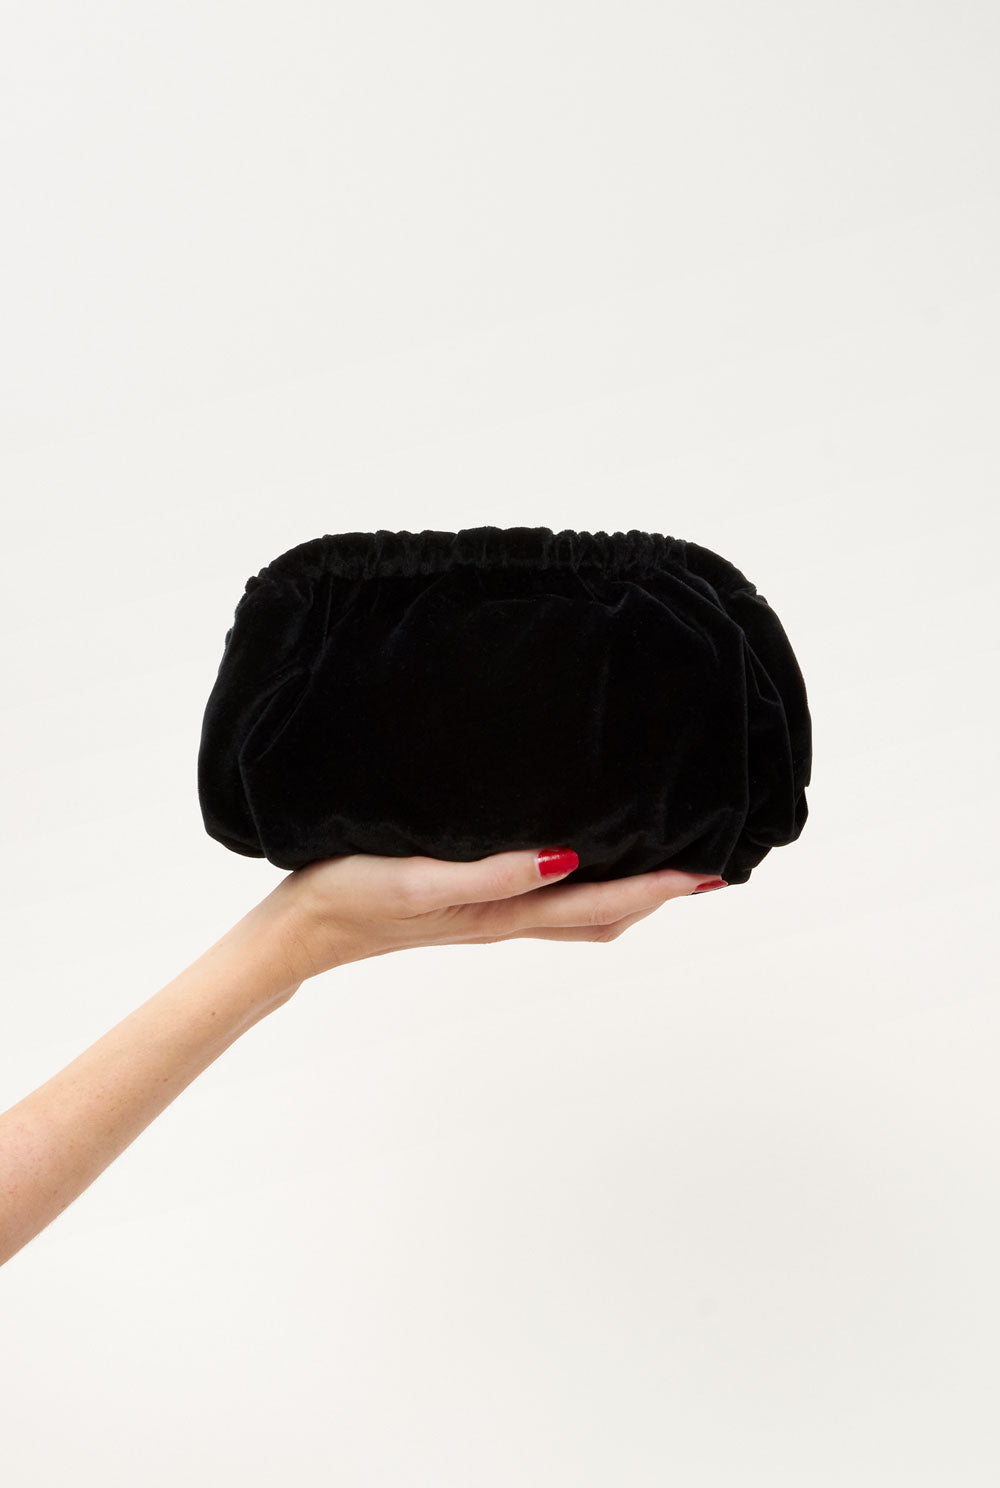 The mini Zumaia bag new velvet black Mini bags The Bag Lab 